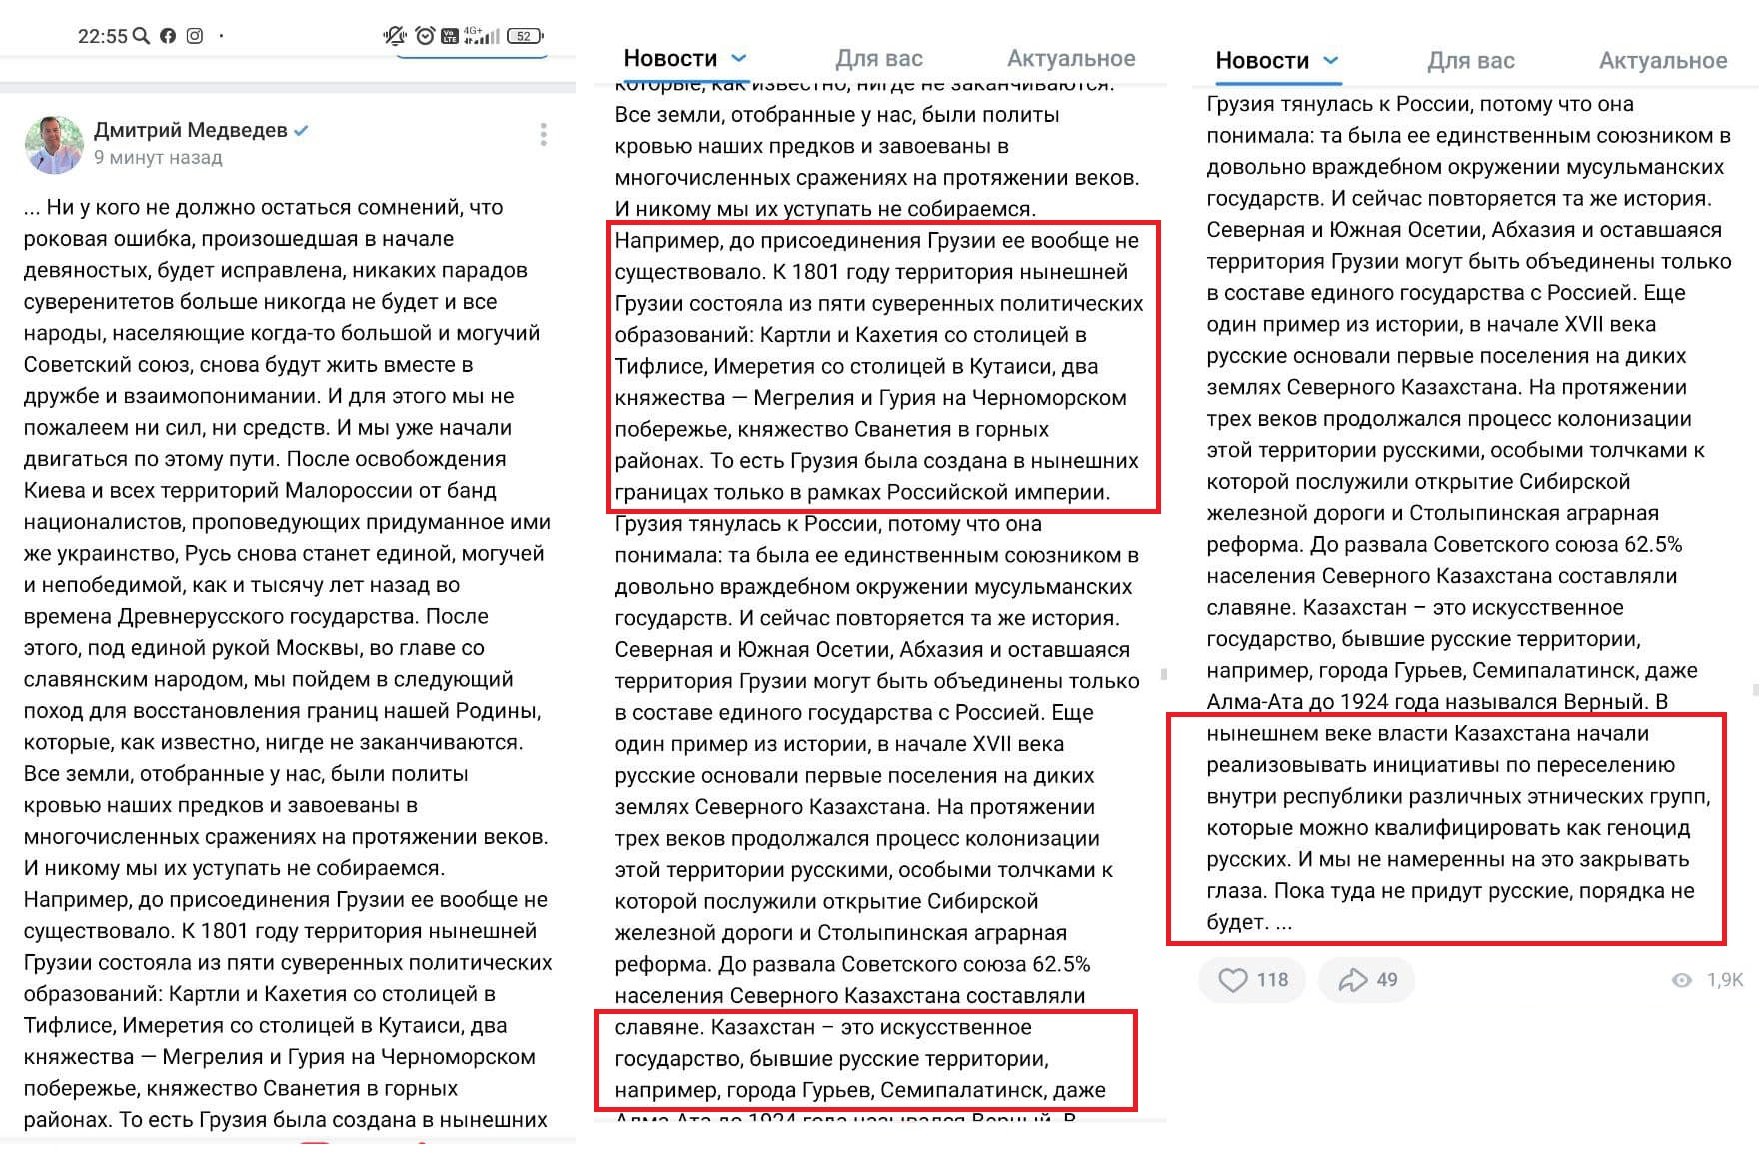 Медведев назвал Казахстан "искусственным государством", угрожая нападением на Грузию